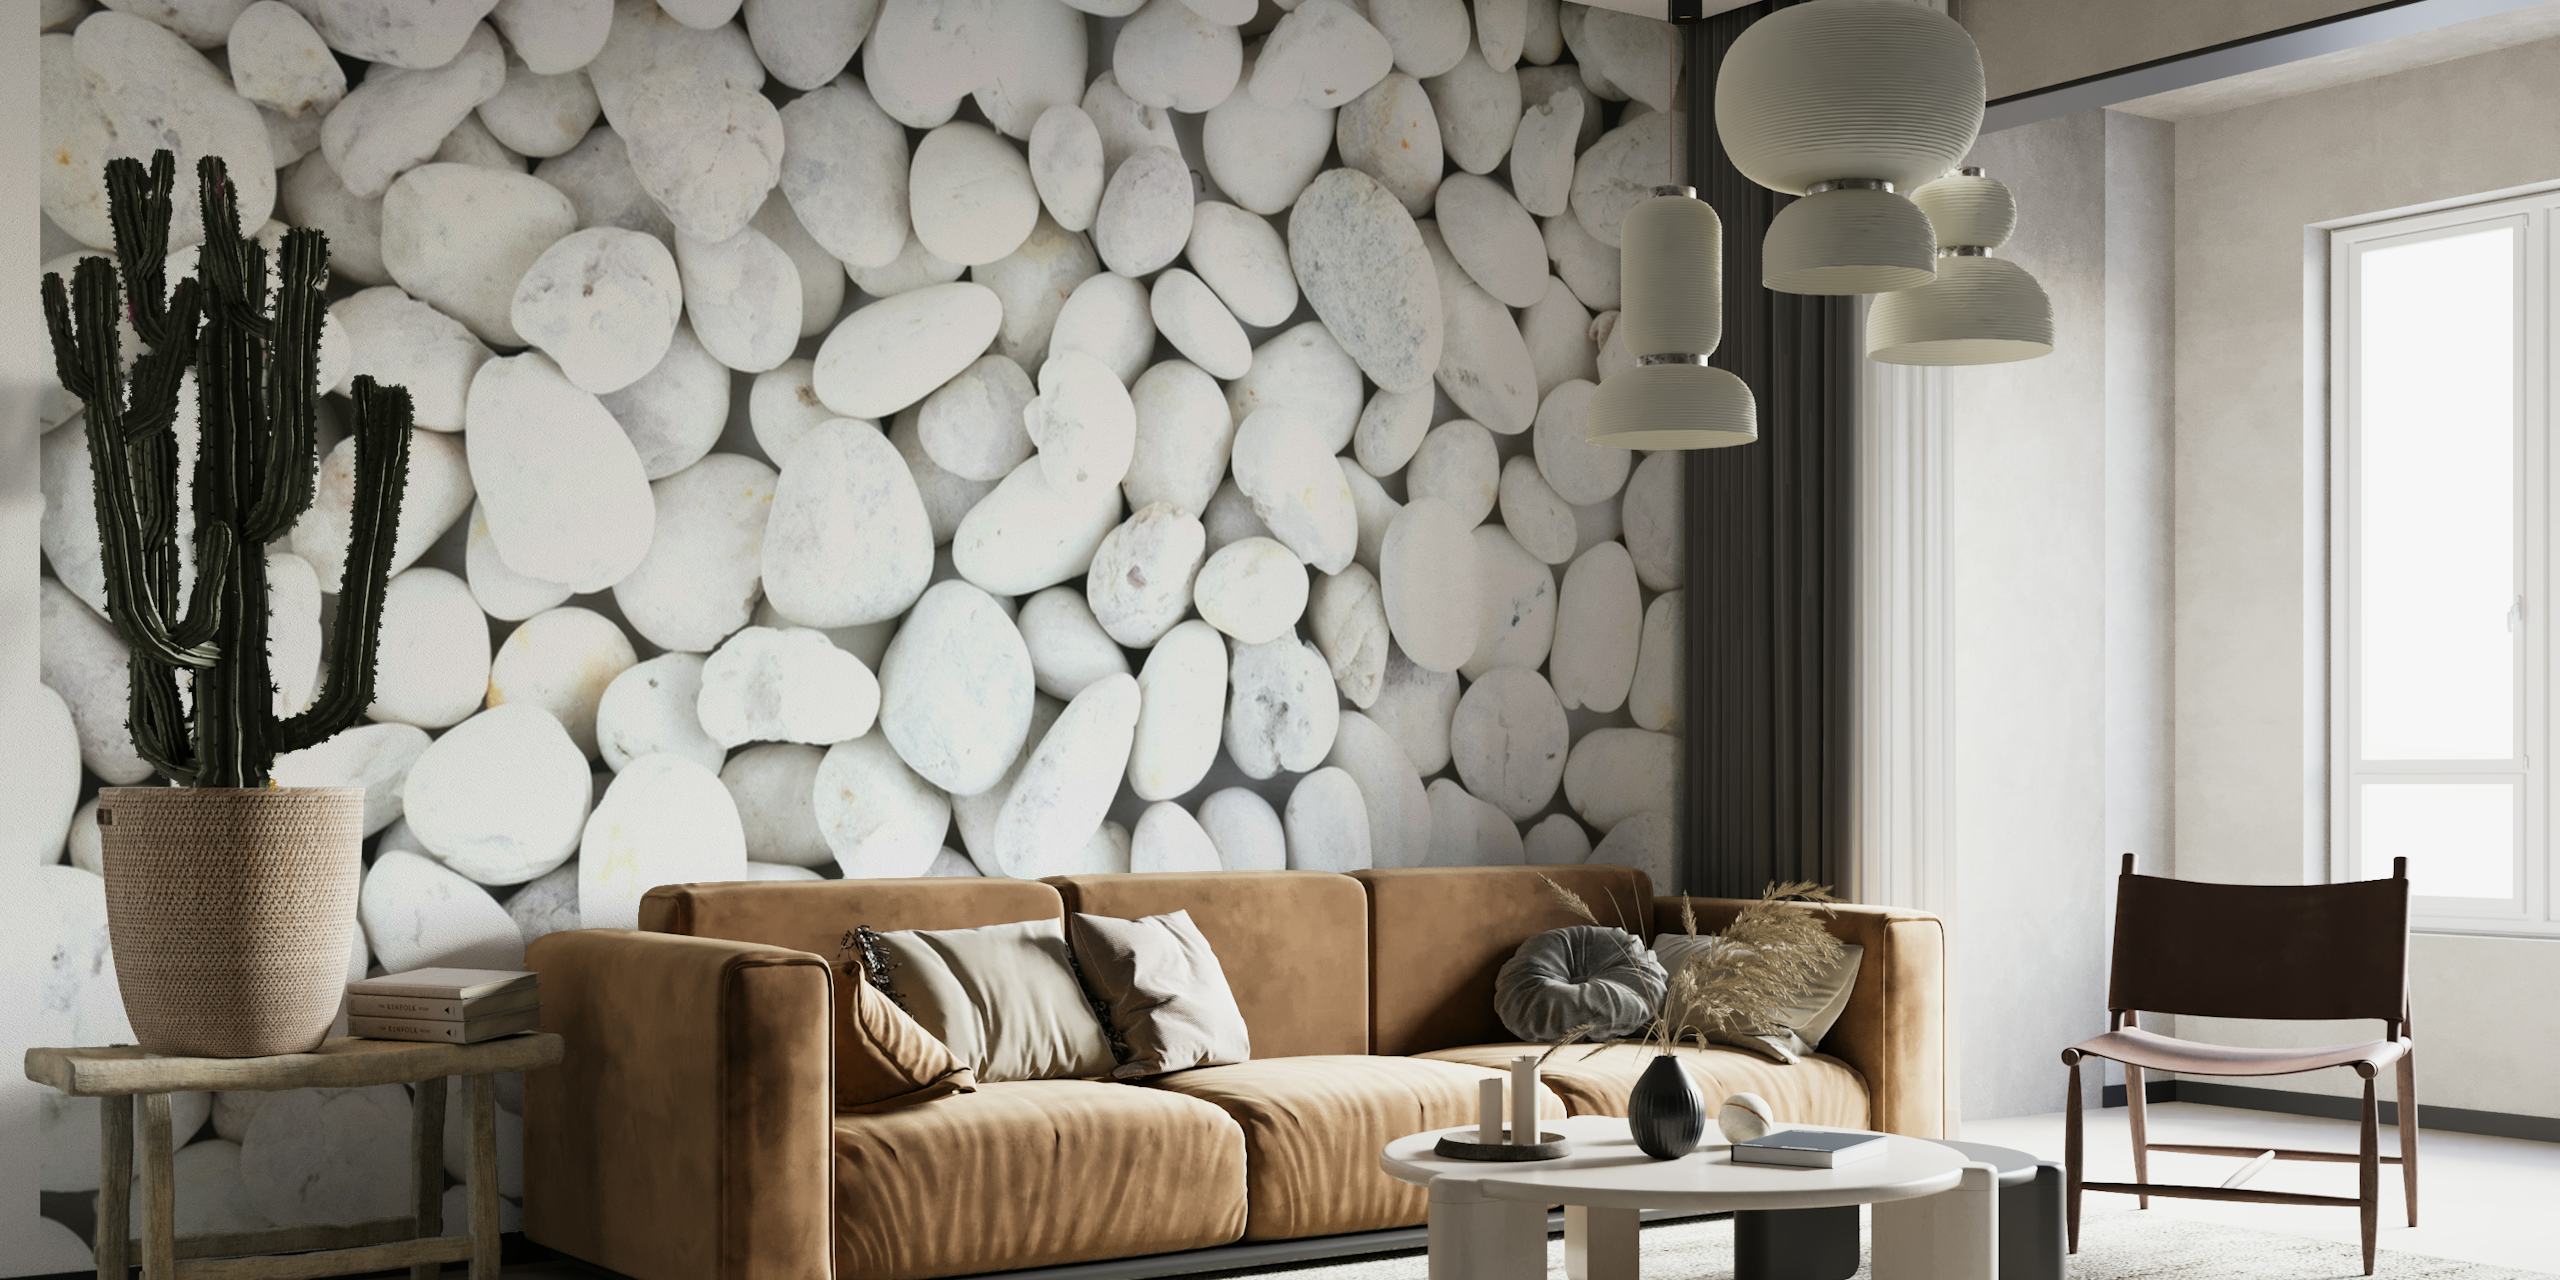 Zidna slika od glatkih bijelih kamenčića stvara miran, teksturiran izgled